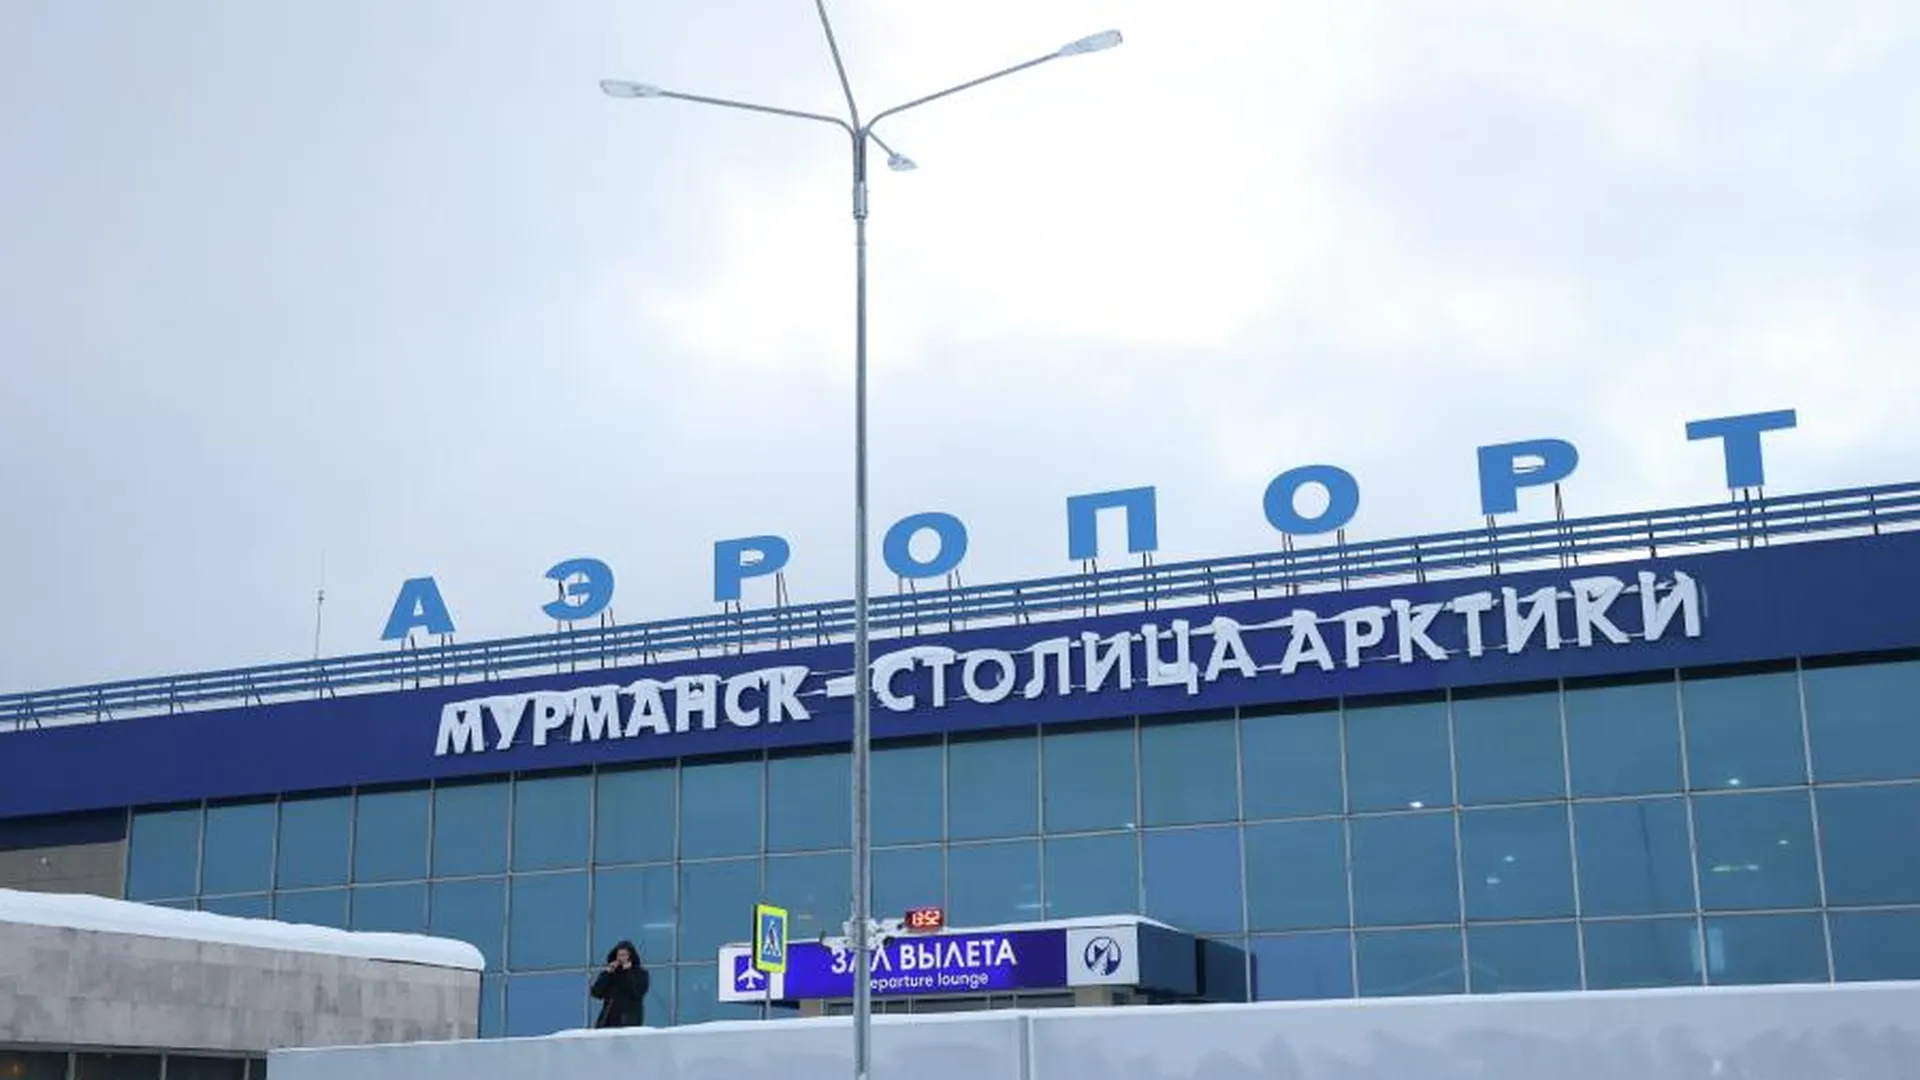 Сложная «геология» может задержать реконструкцию аэропорта Мурманска